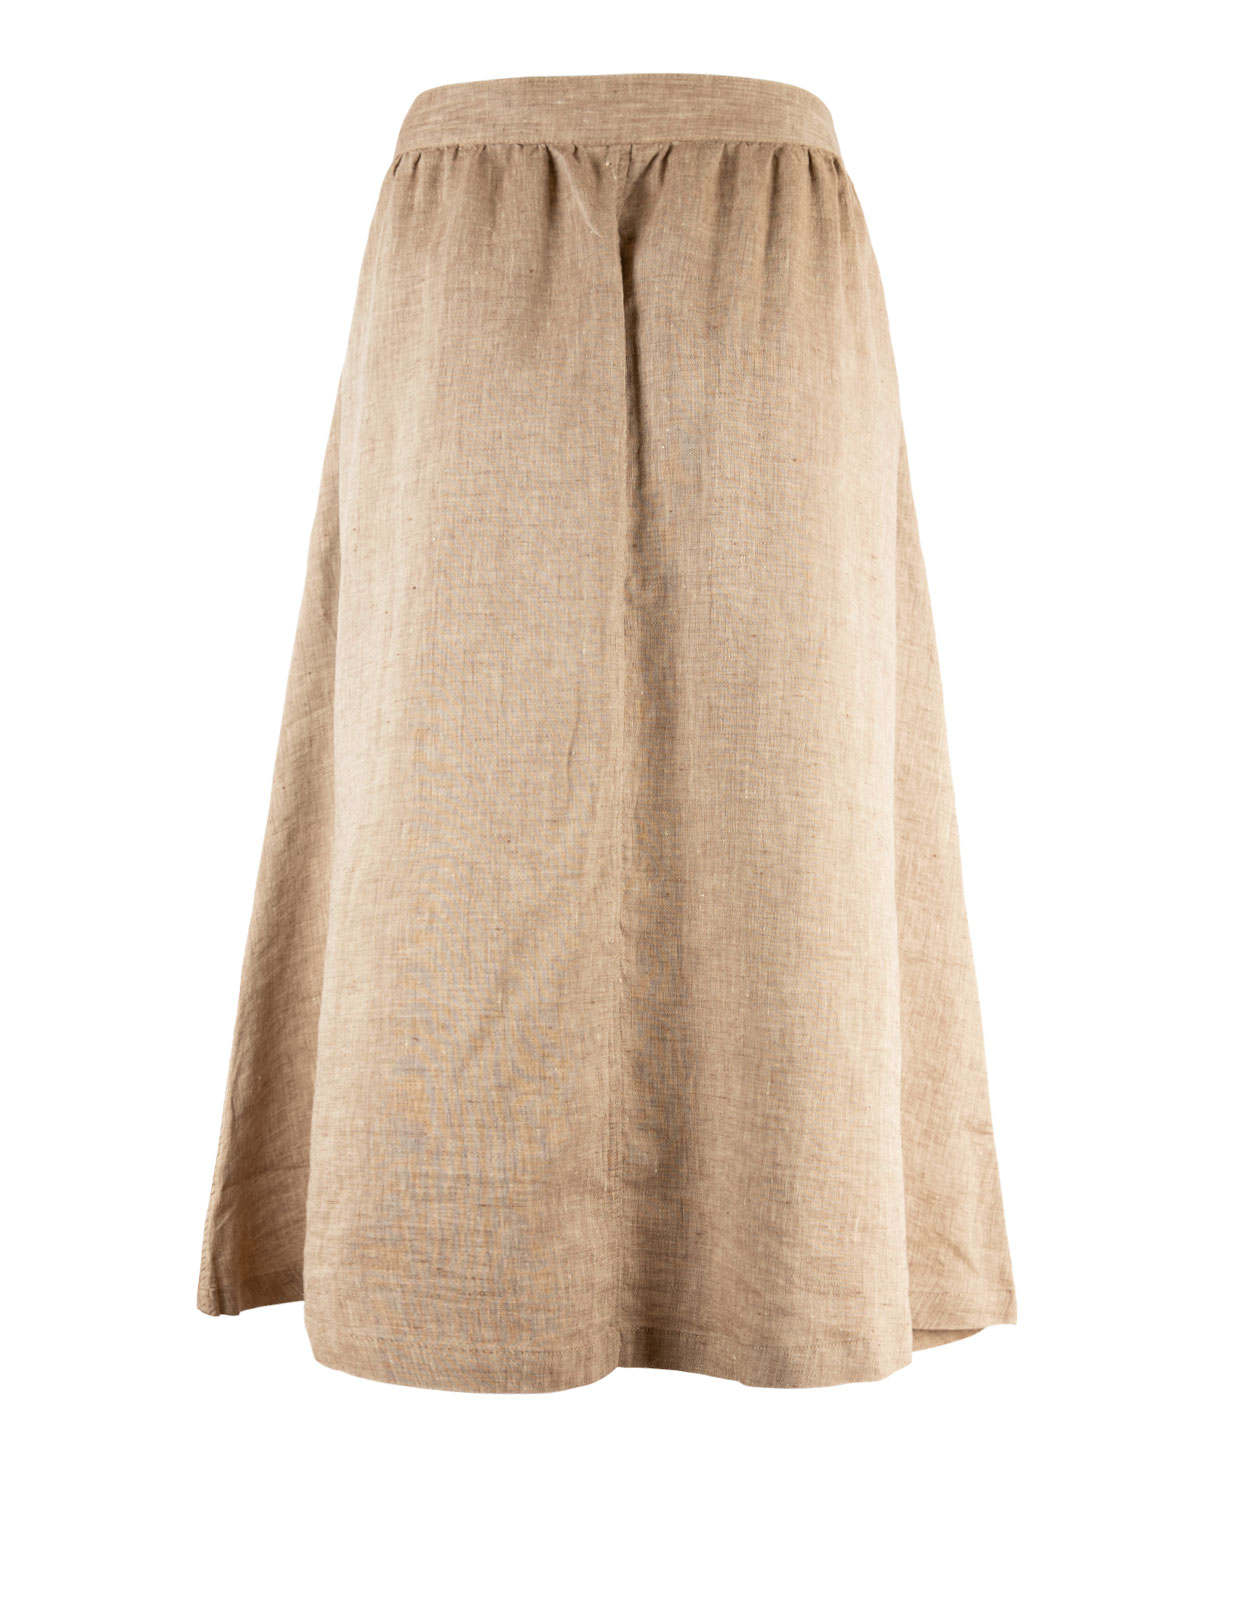 Elma Linen Skirt Light Brown